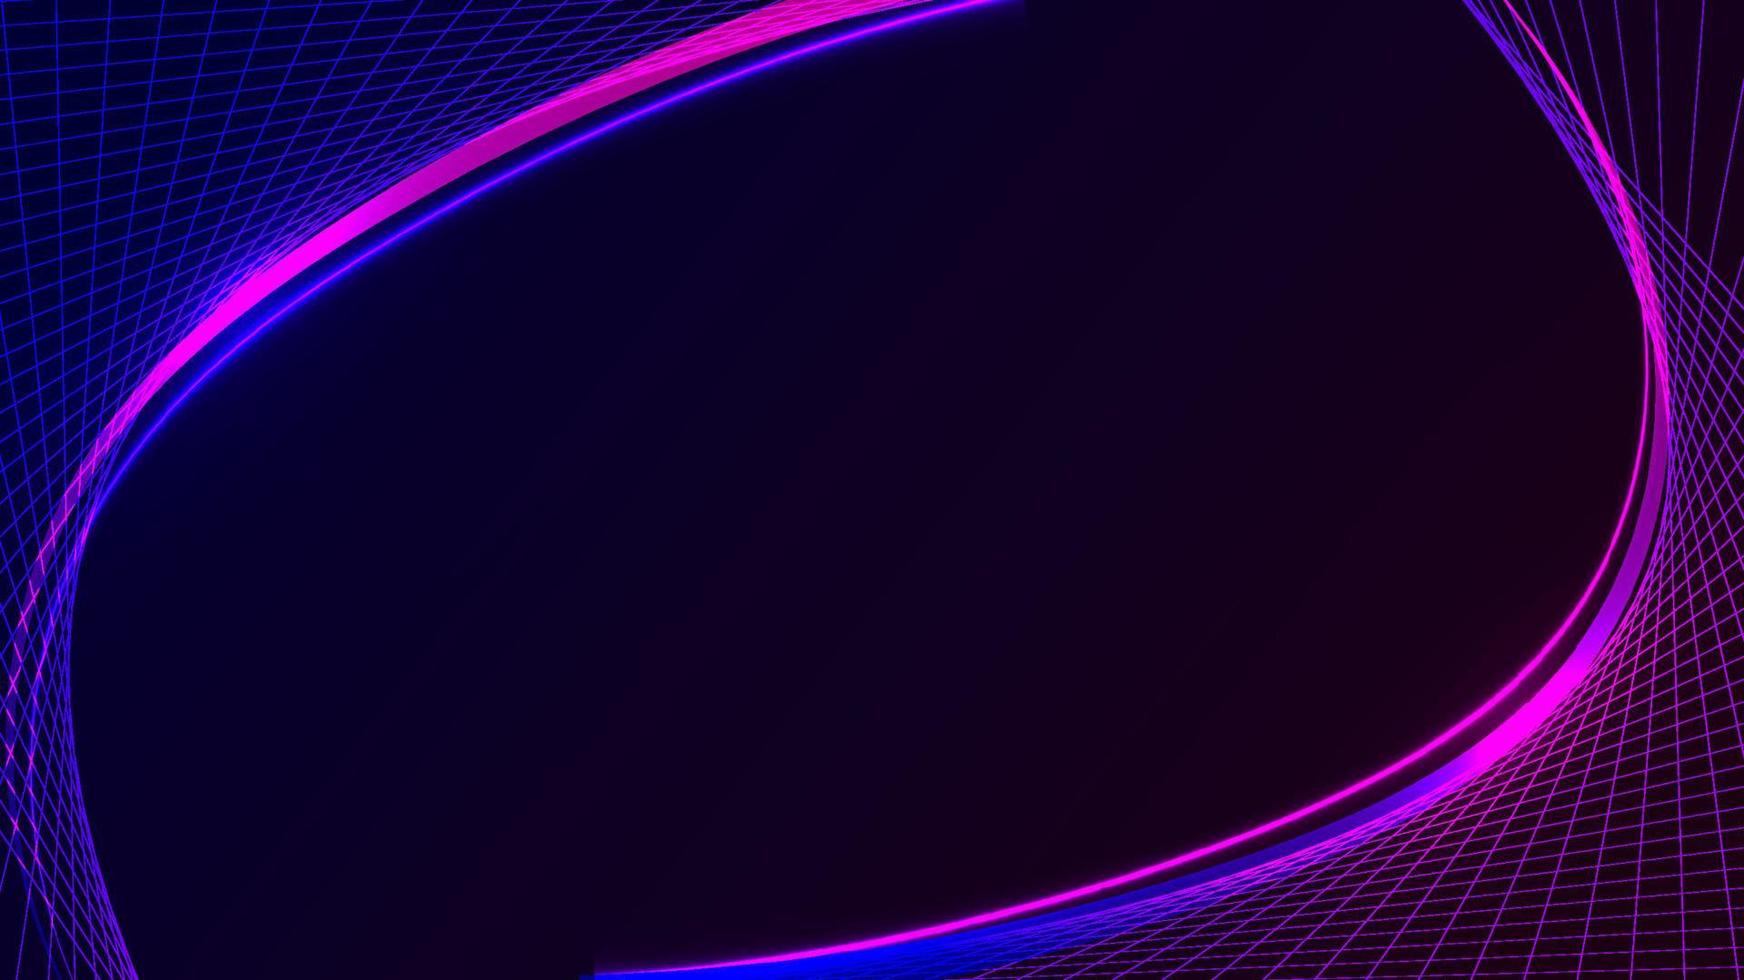 abstrakte technologieschablone blaue und rosa gitterlinien mit neonlichteffekt auf schwarzem hintergrund vektor